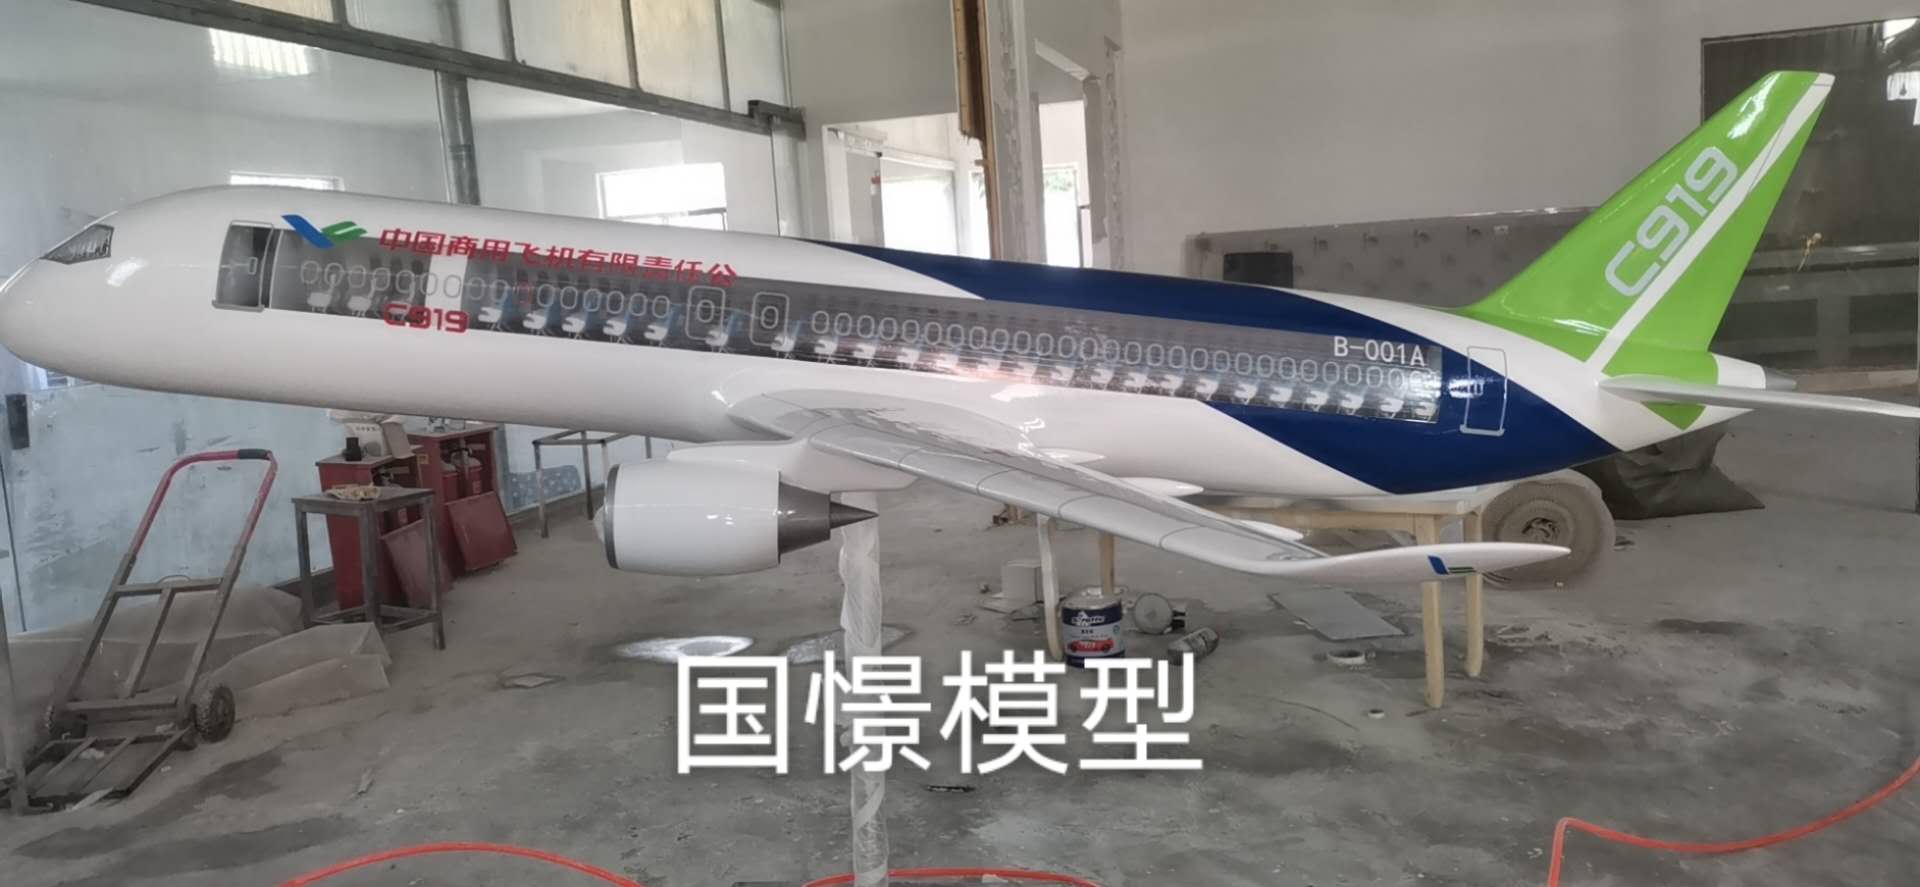 鹤峰县飞机模型